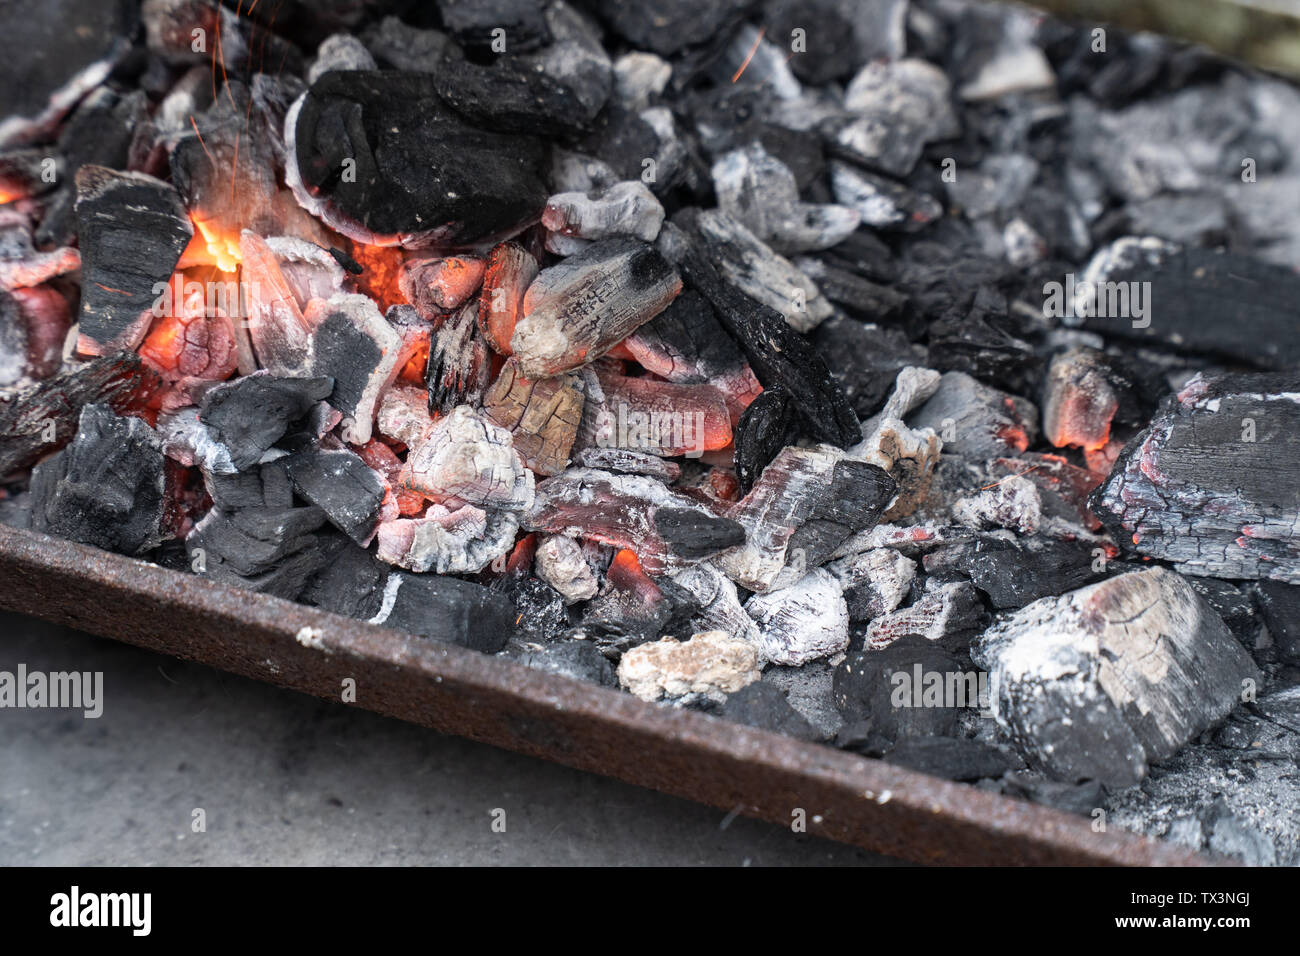 La quema de carbón vegetal listo para la barbacoa. Barbacoa